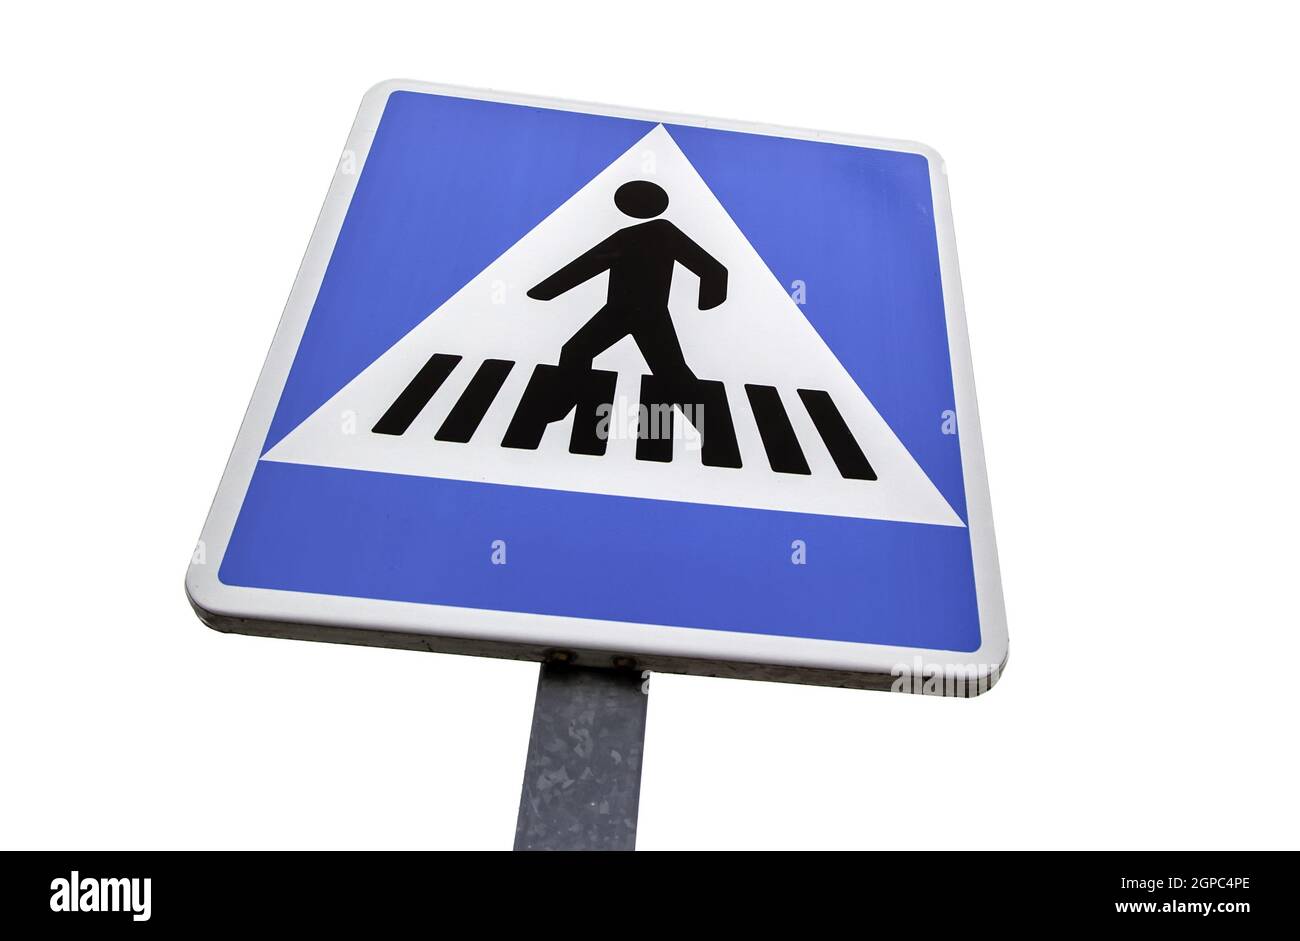 Dettaglio del cartello informativo per pedoni, sicurezza stradale Foto Stock